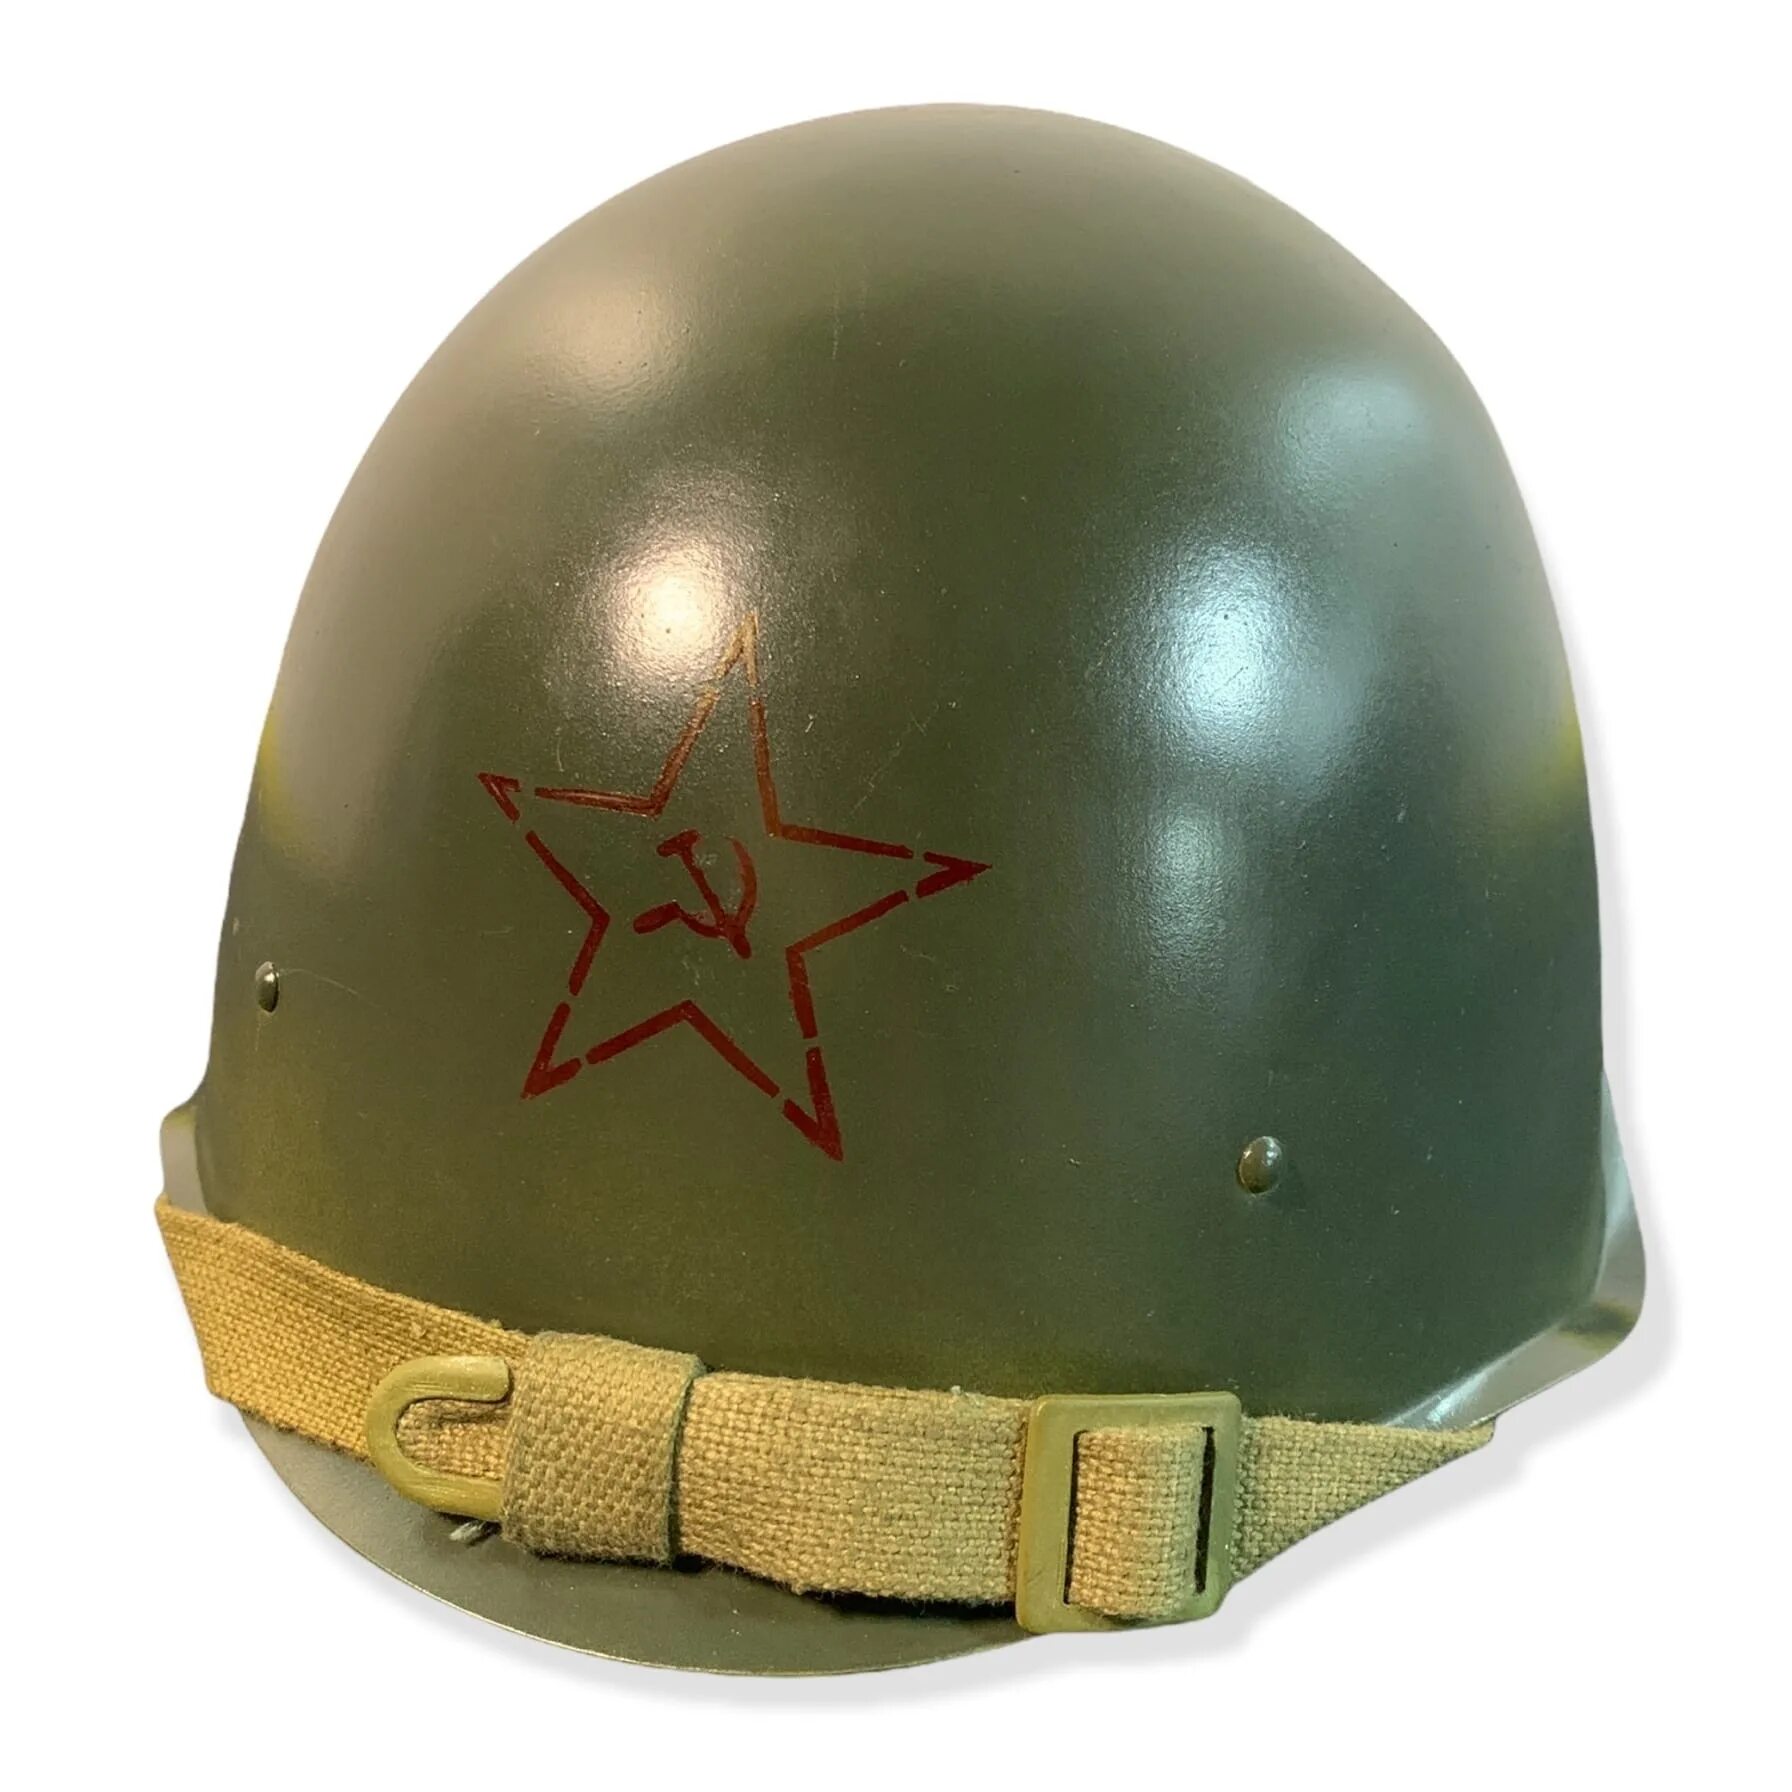 Каска РККА СШ-40. Каска армейская СШ-40. СШ-40 стальной шлем образца 1940. Каска армейская стальная «СШ-68». Армейская сталь